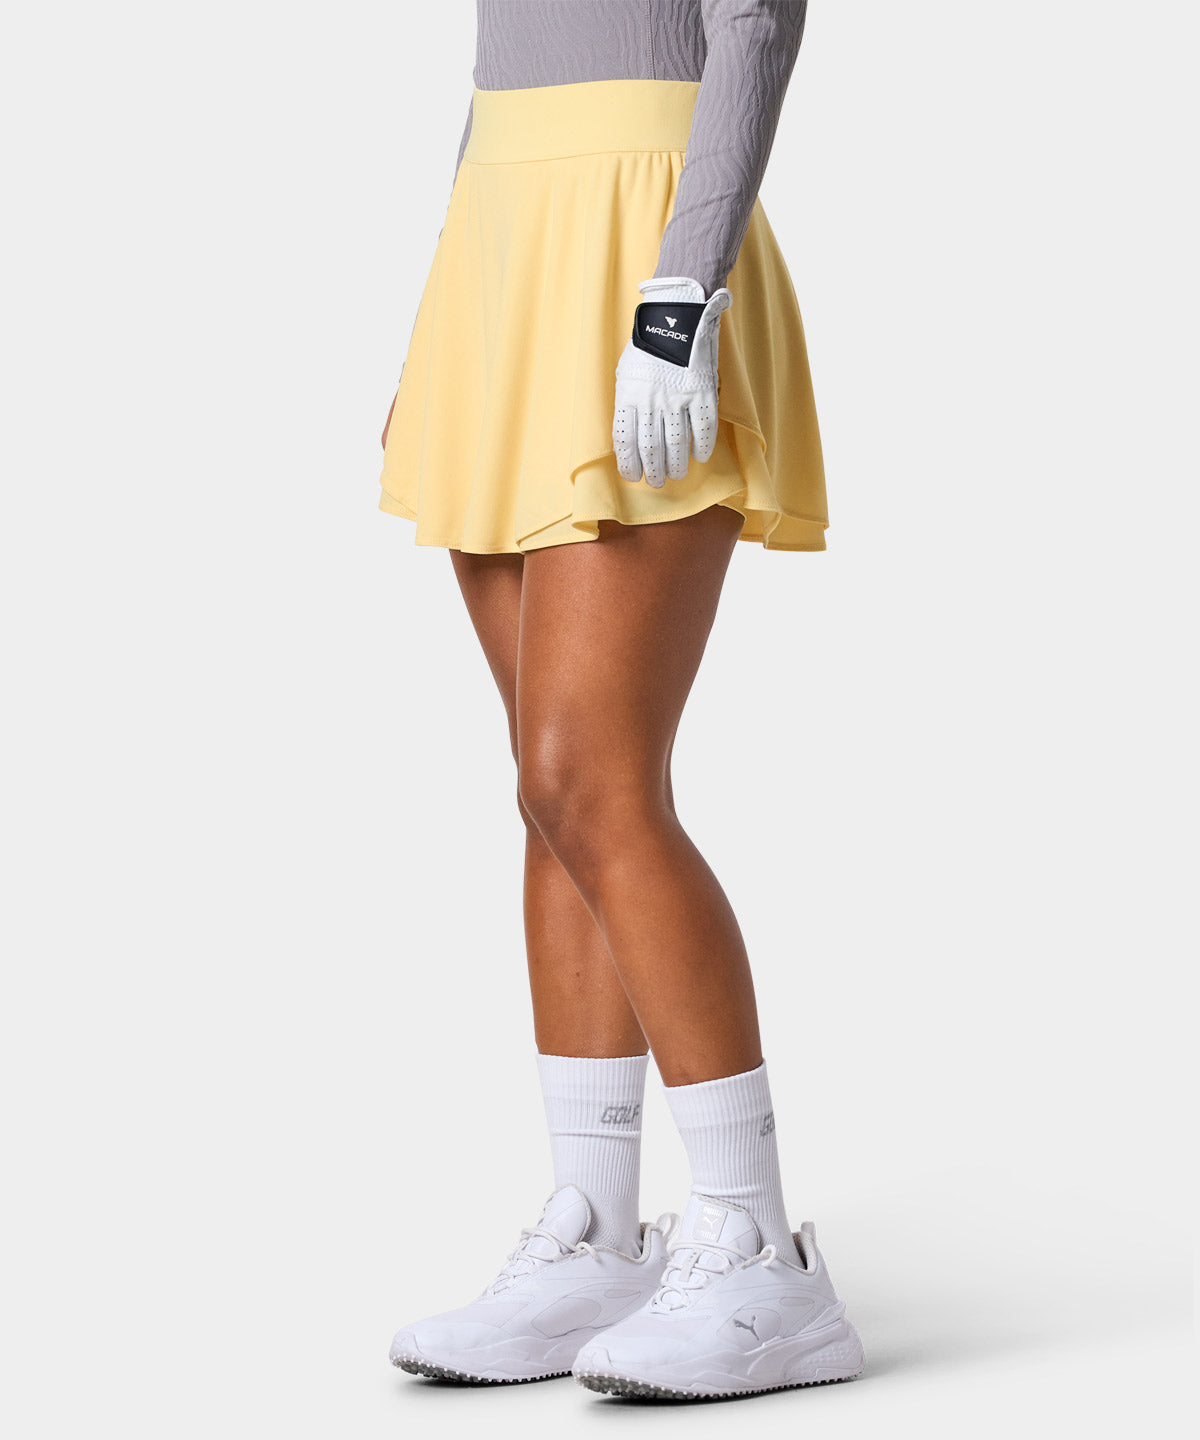 Cleo Yellow Tour Skirt